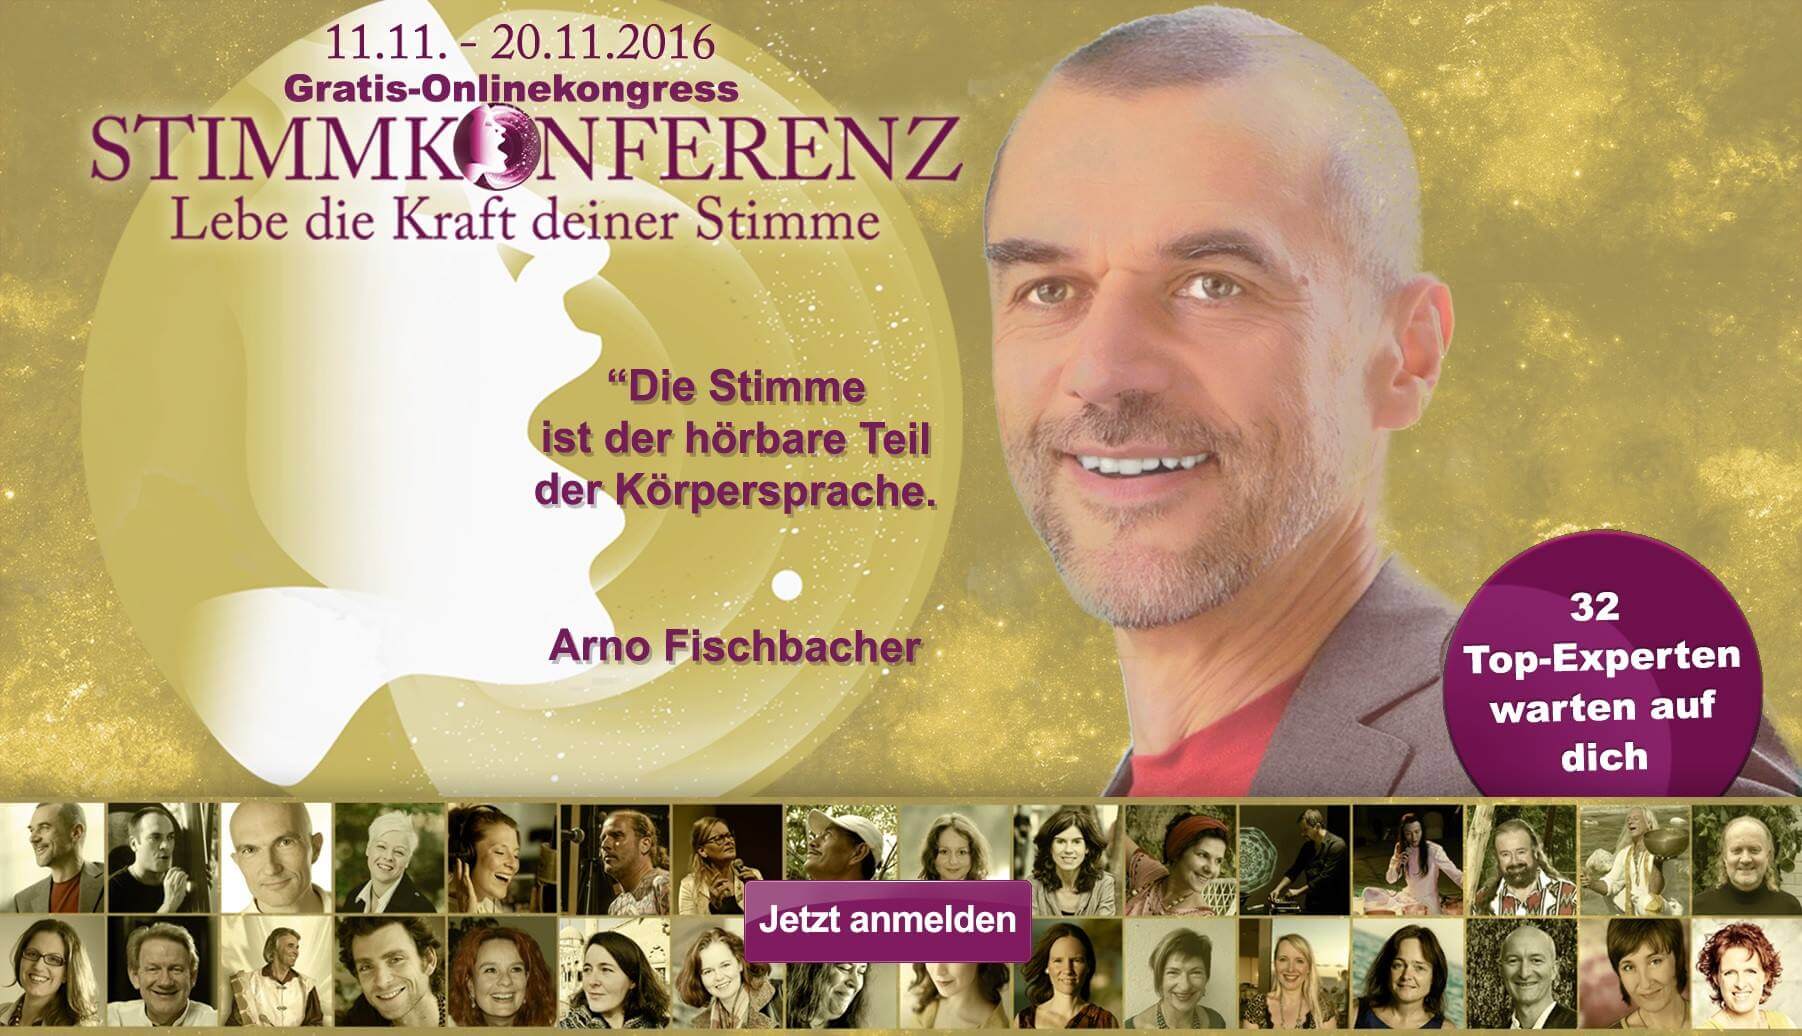 Werbebanner für eine Online-Stimmkonferenz mit einem lächelnden Glatzkopf, Arno Fischbacher, mit Terminen und einer Liste von 32 Experten. Text in Deutsch, gelb und